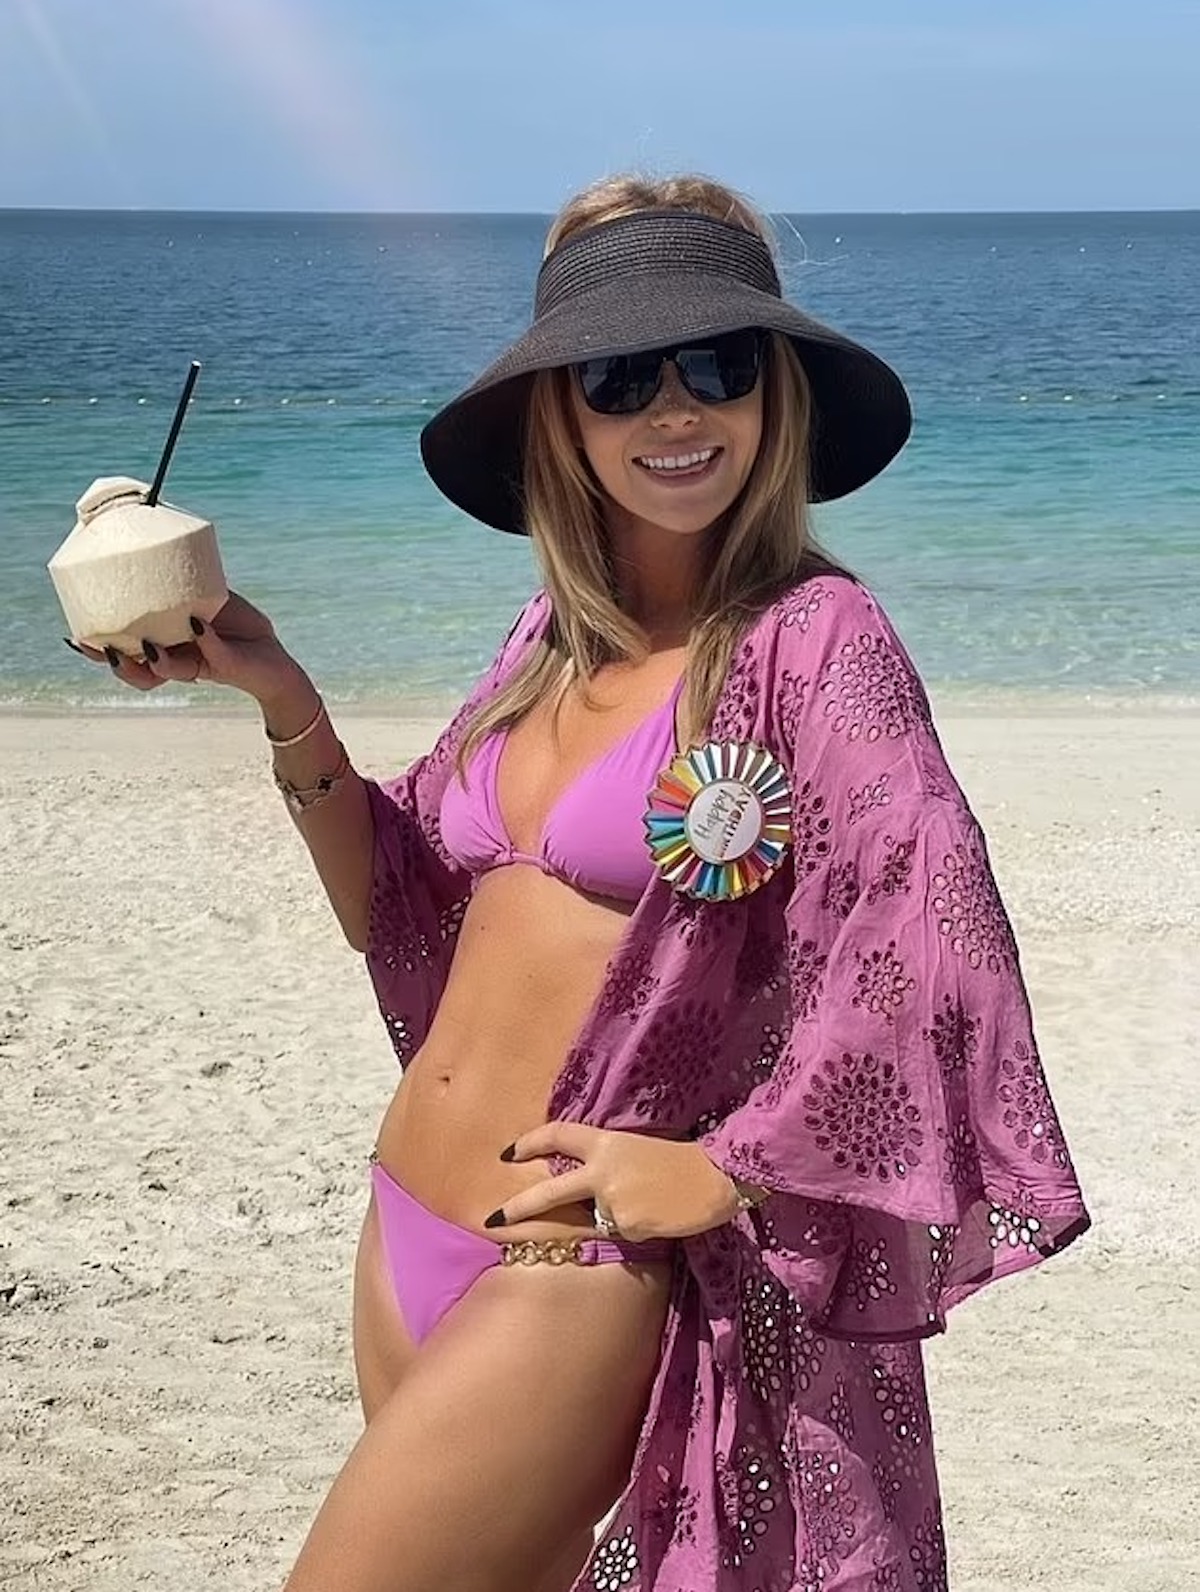 Amanda Holden, l'attrice perfetta in bikini a 52 anni